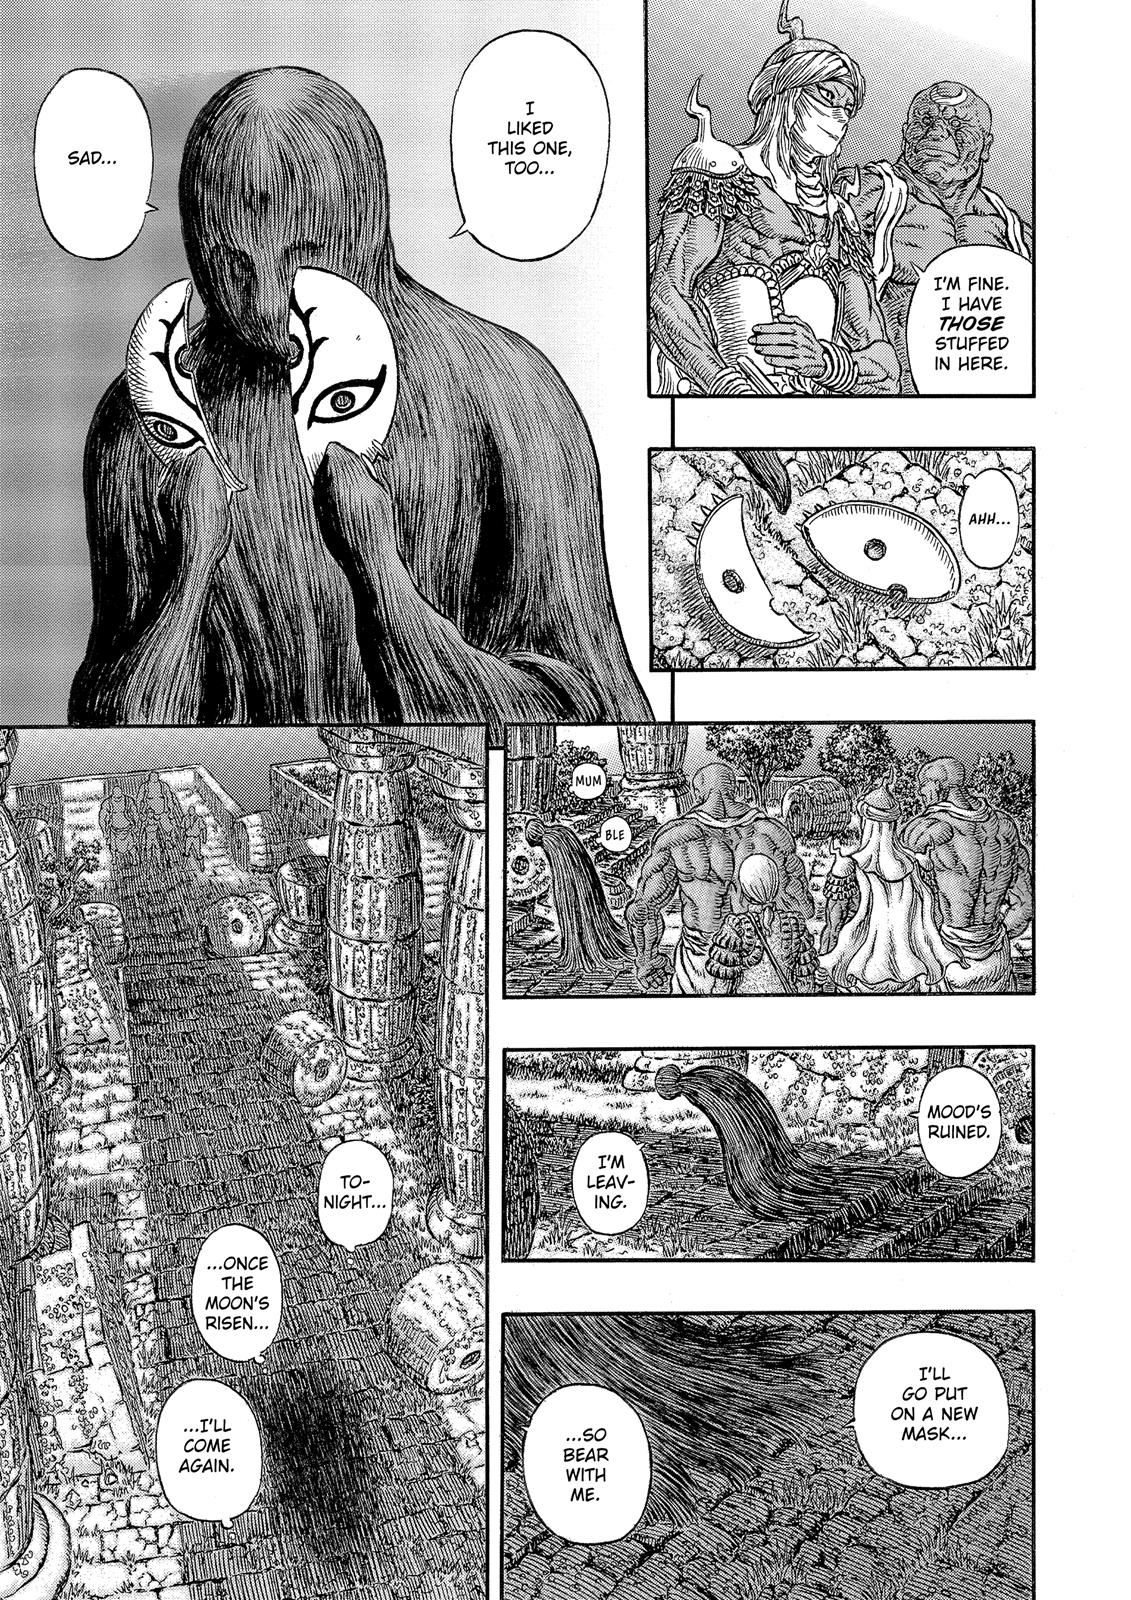 Berserk Manga Chapter 339 image 10